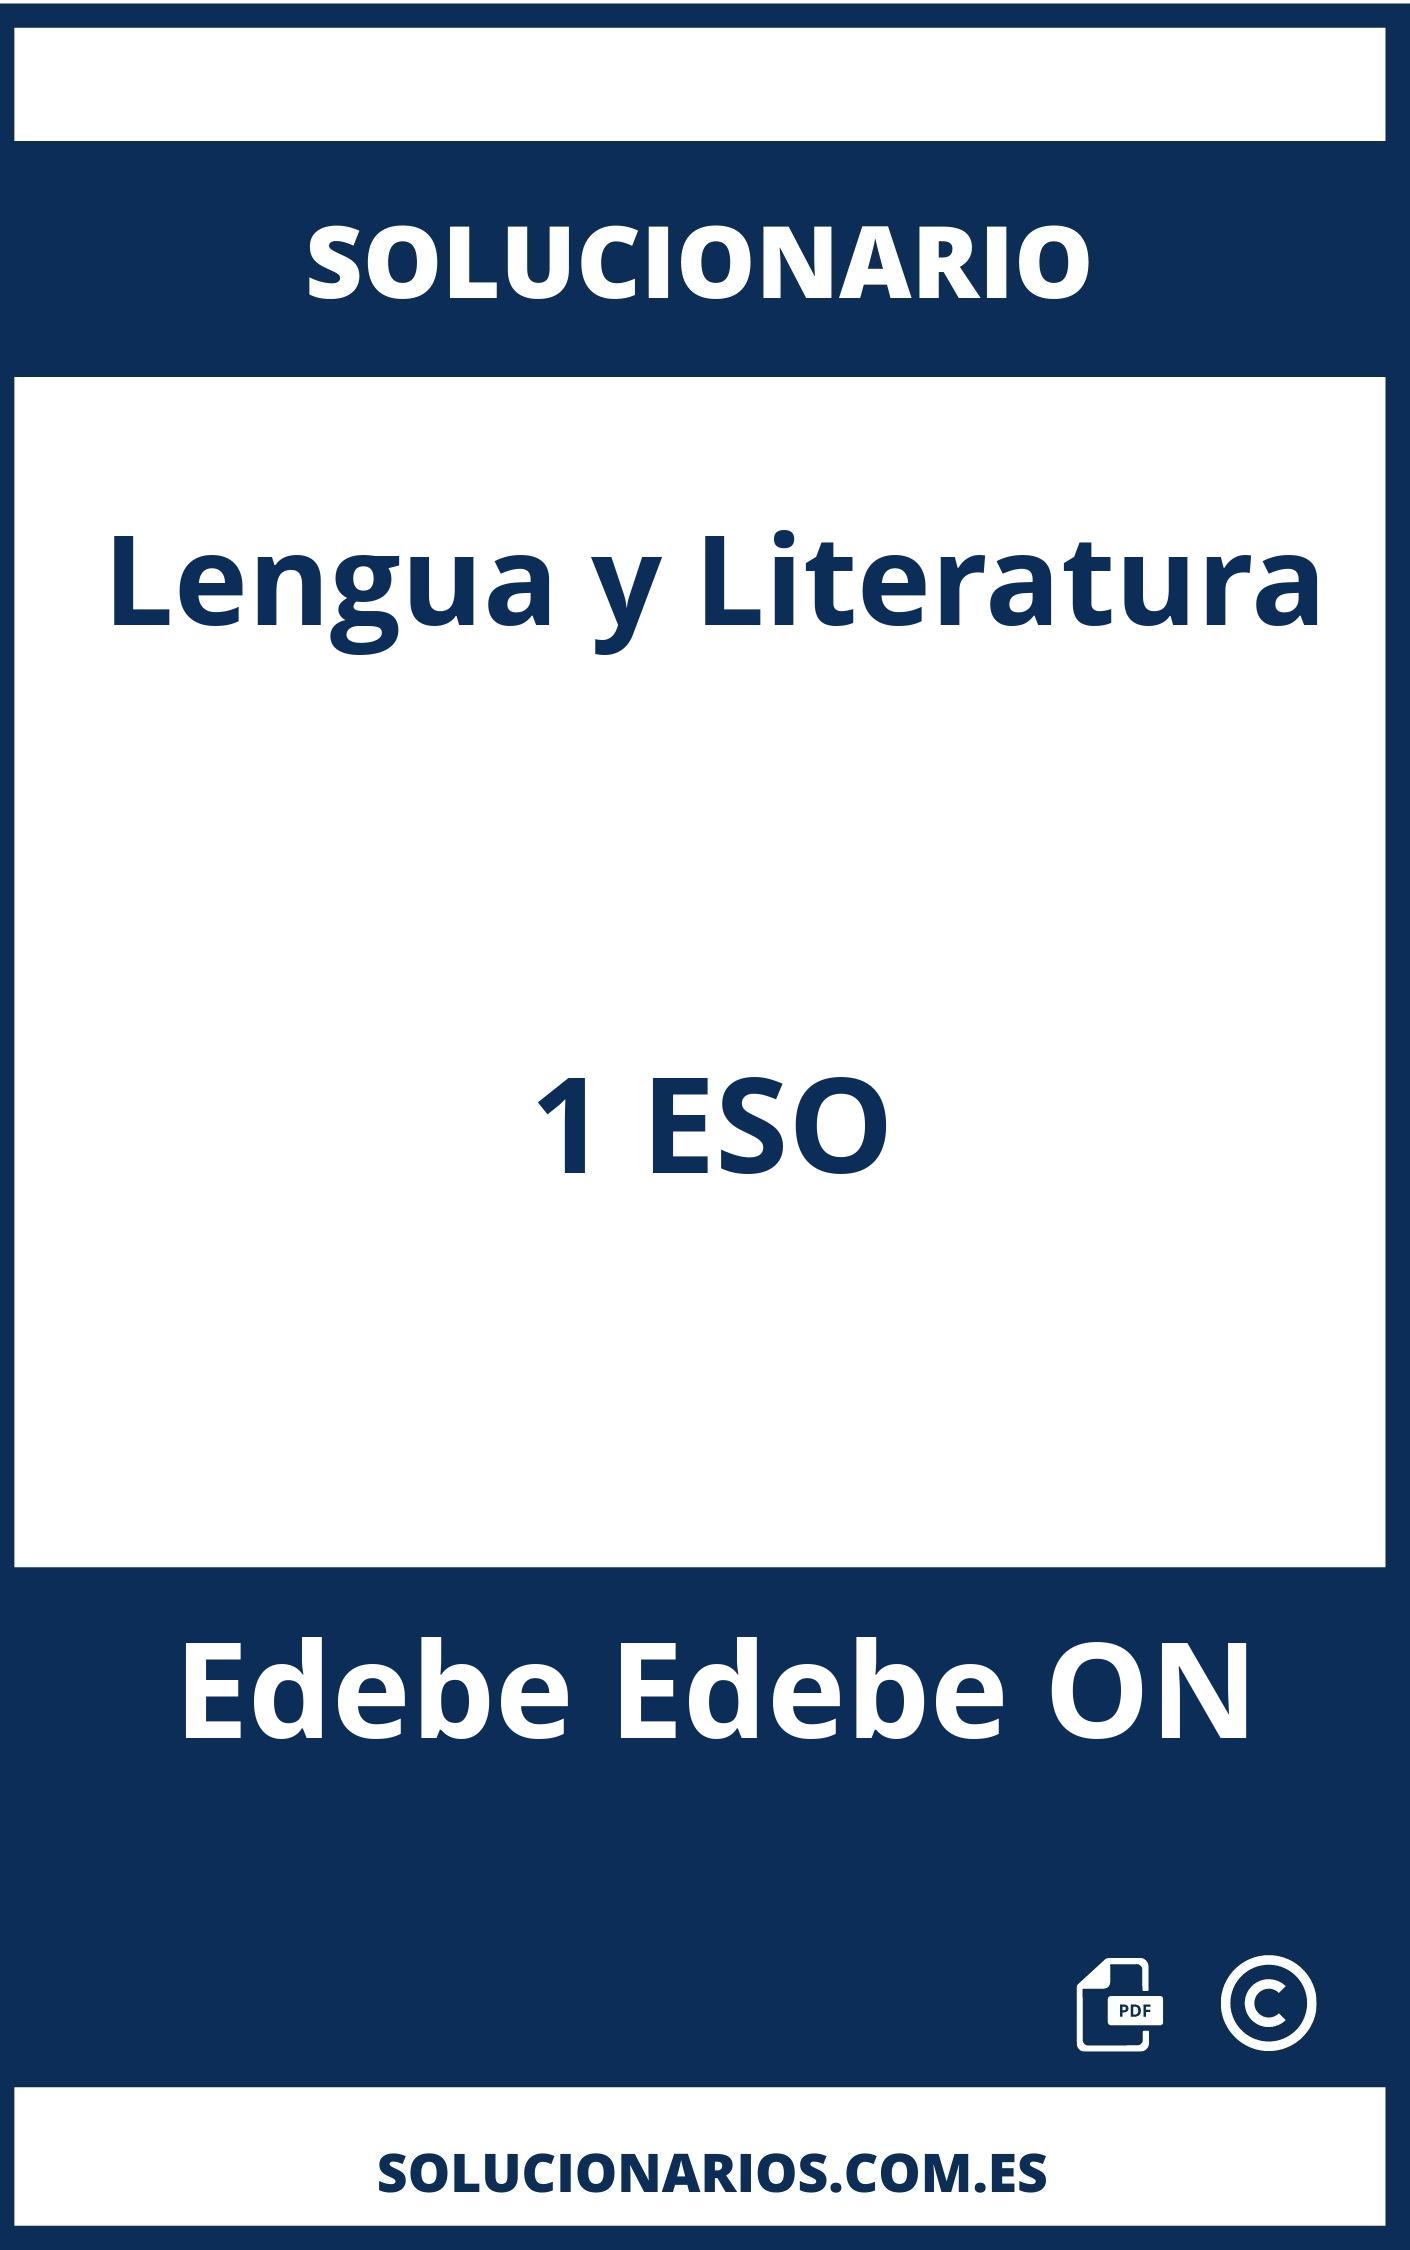 Solucionario Lengua y Literatura 1 ESO Edebe Edebe ON